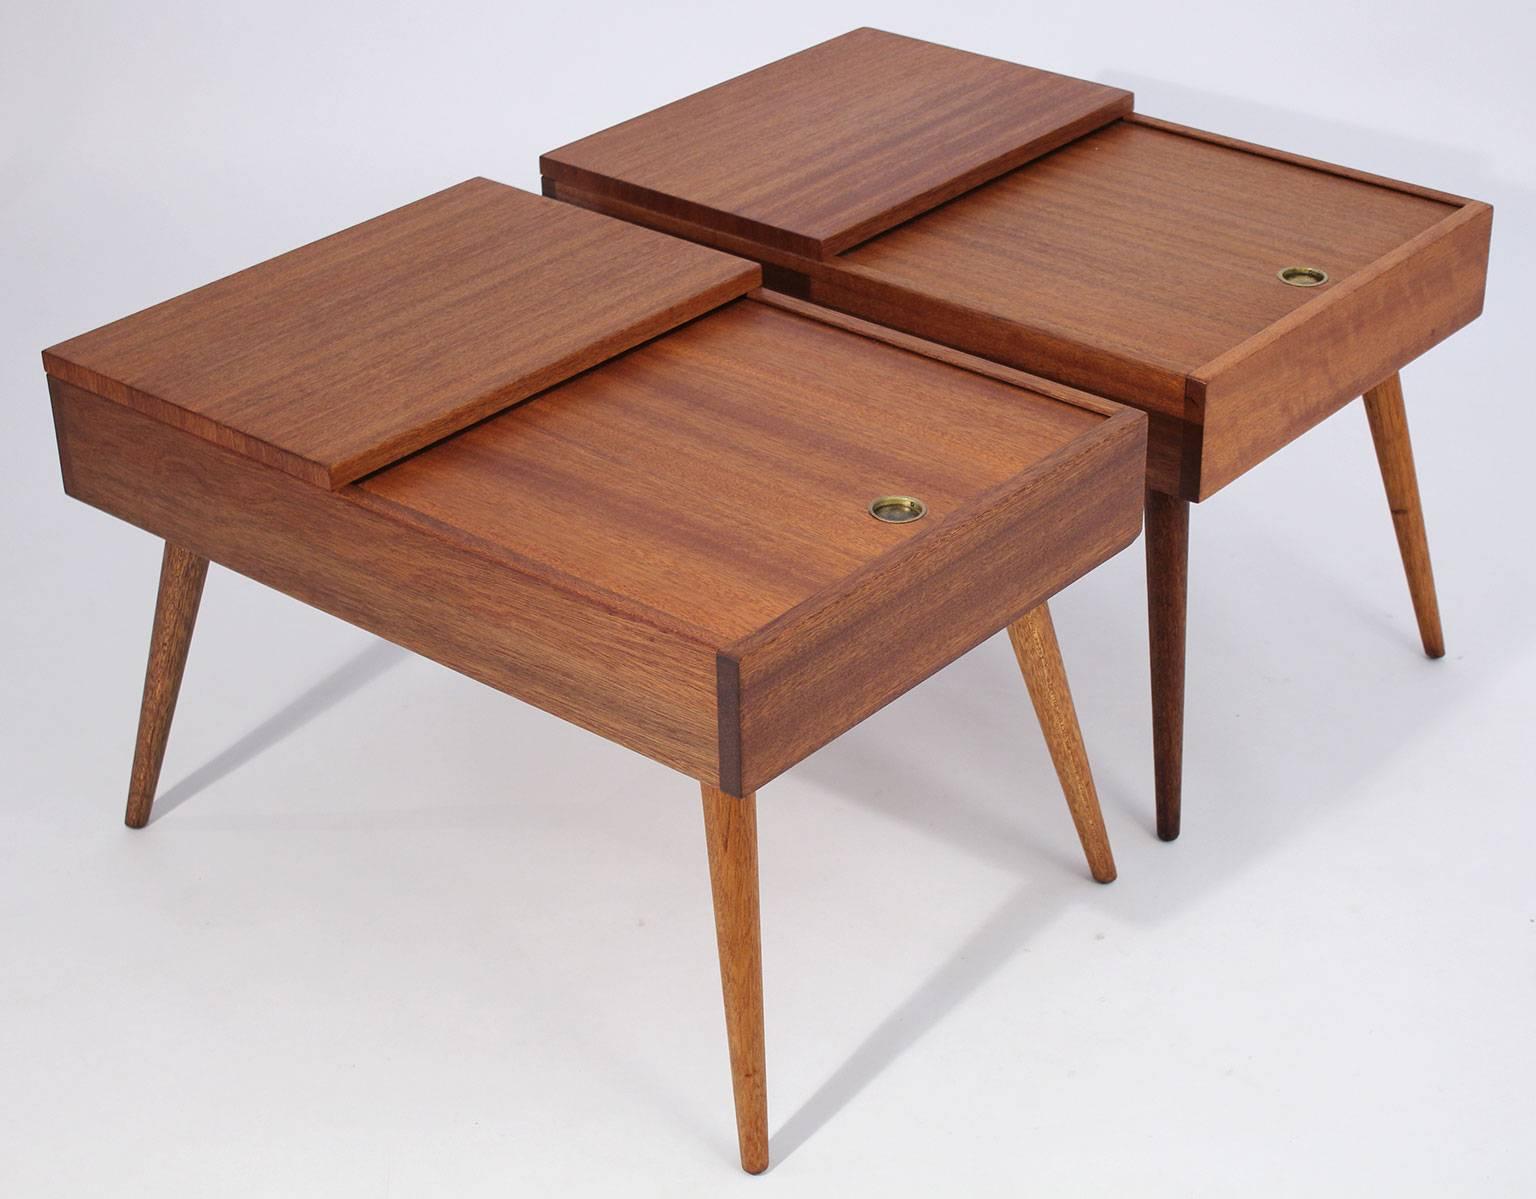 Tables d'appoint Brown Saltman conçues par John Keal, vers les années 1950. Fabriqué en bois d'acajou. Le tiroir supérieur coulisse pour le rangement. Le bois est entièrement restauré dans son état d'origine.